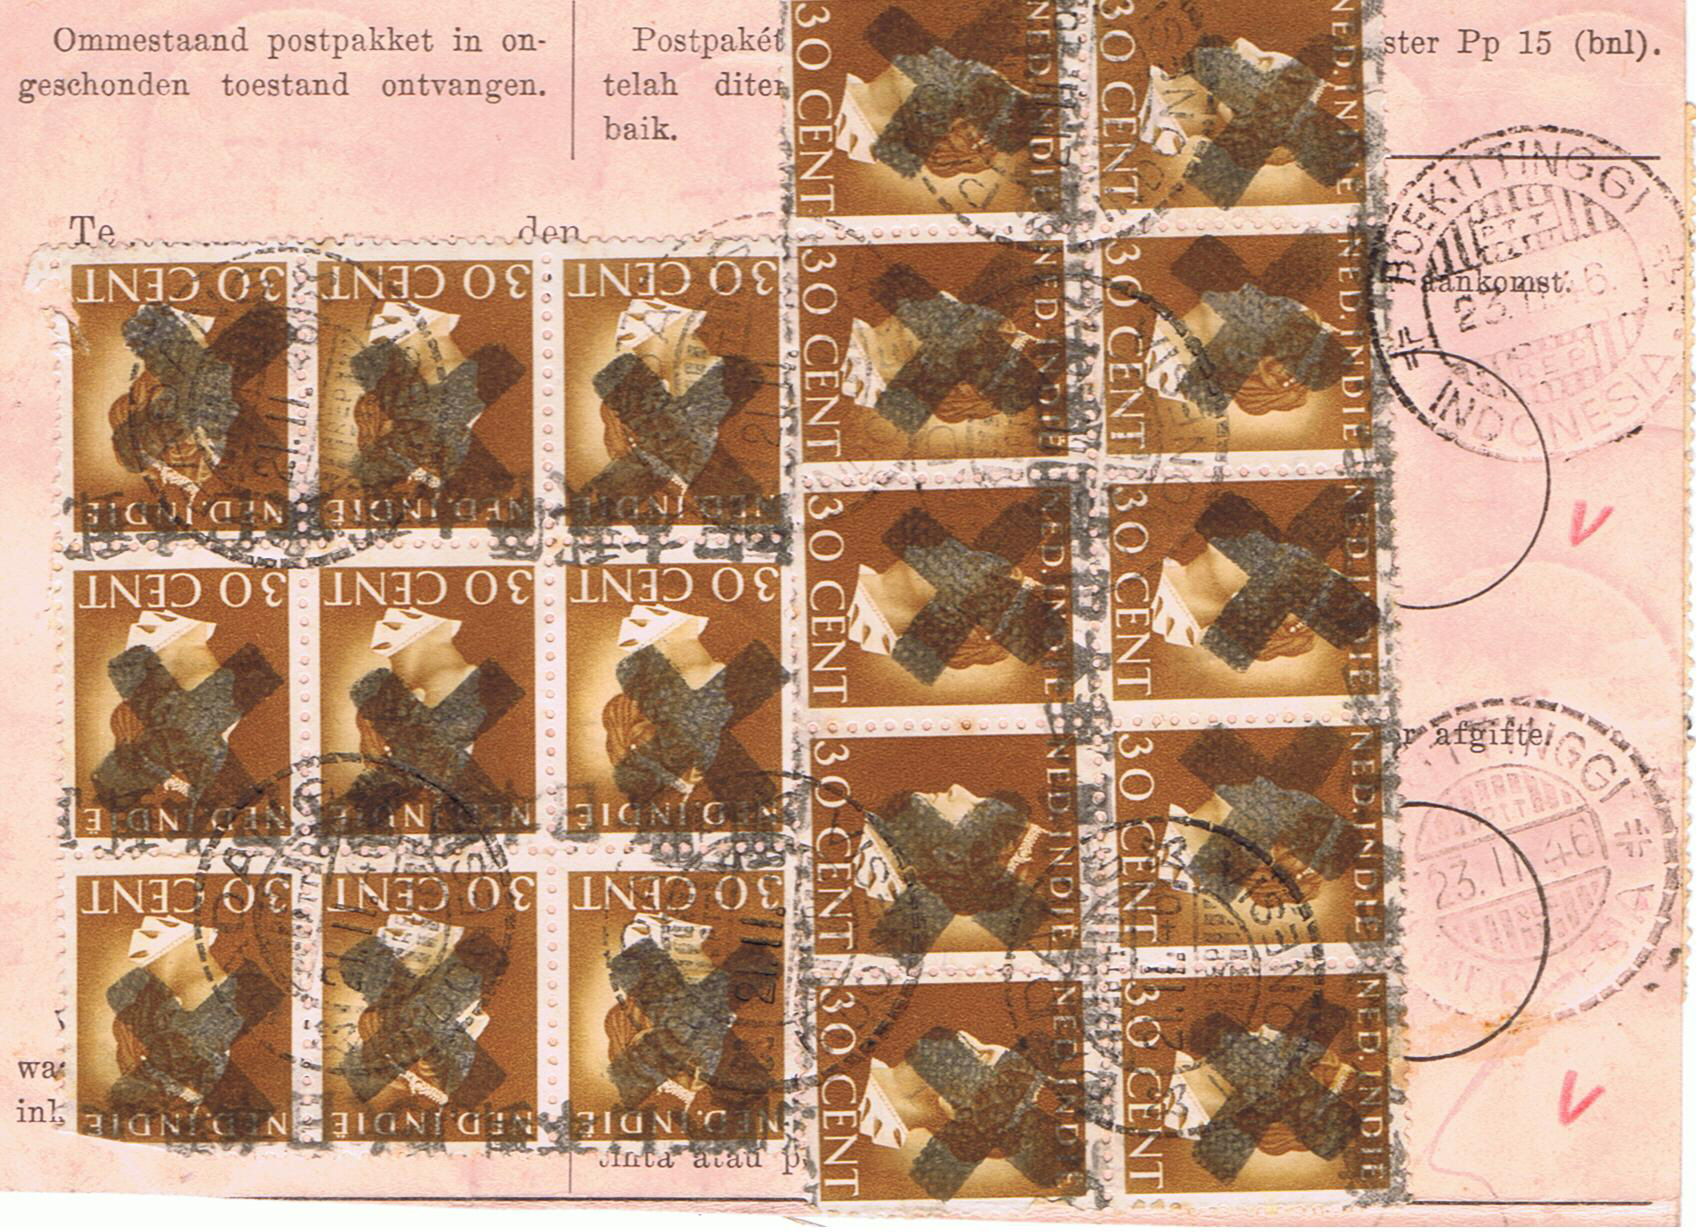 In ieder geval bestaat er een uit Padang verzonden postpakketkaart, waarop de Republikeinse stempels type 252 en 260